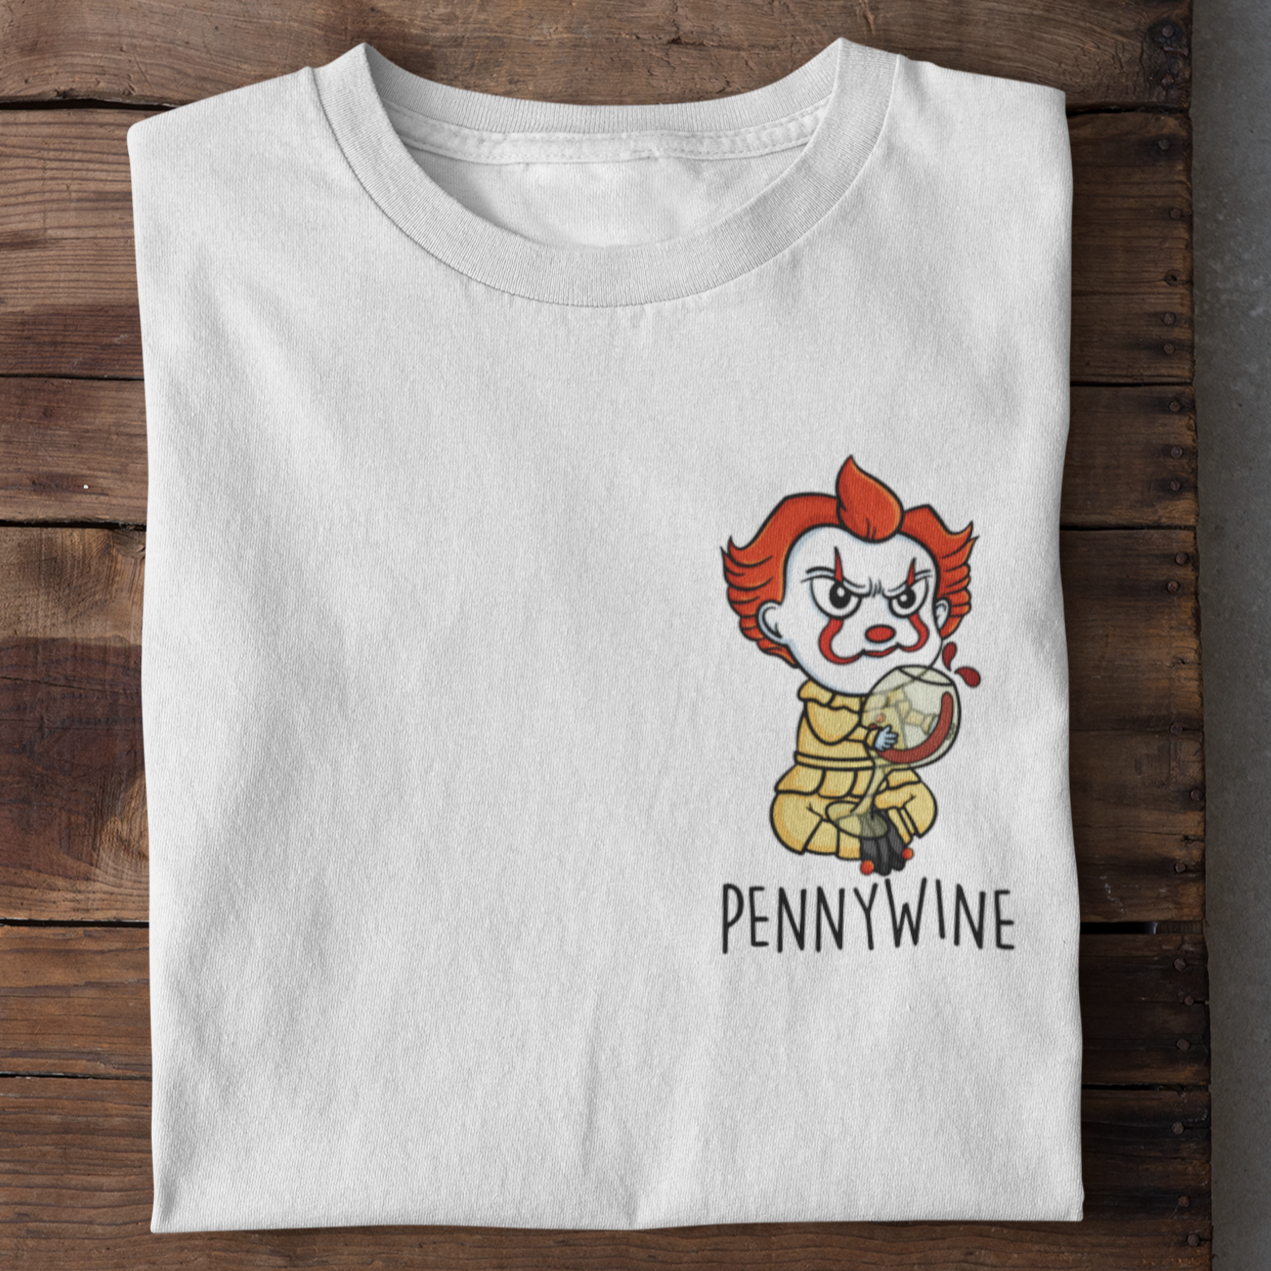 PENNYWINE - Premium Shirt Herren - Weinspirits